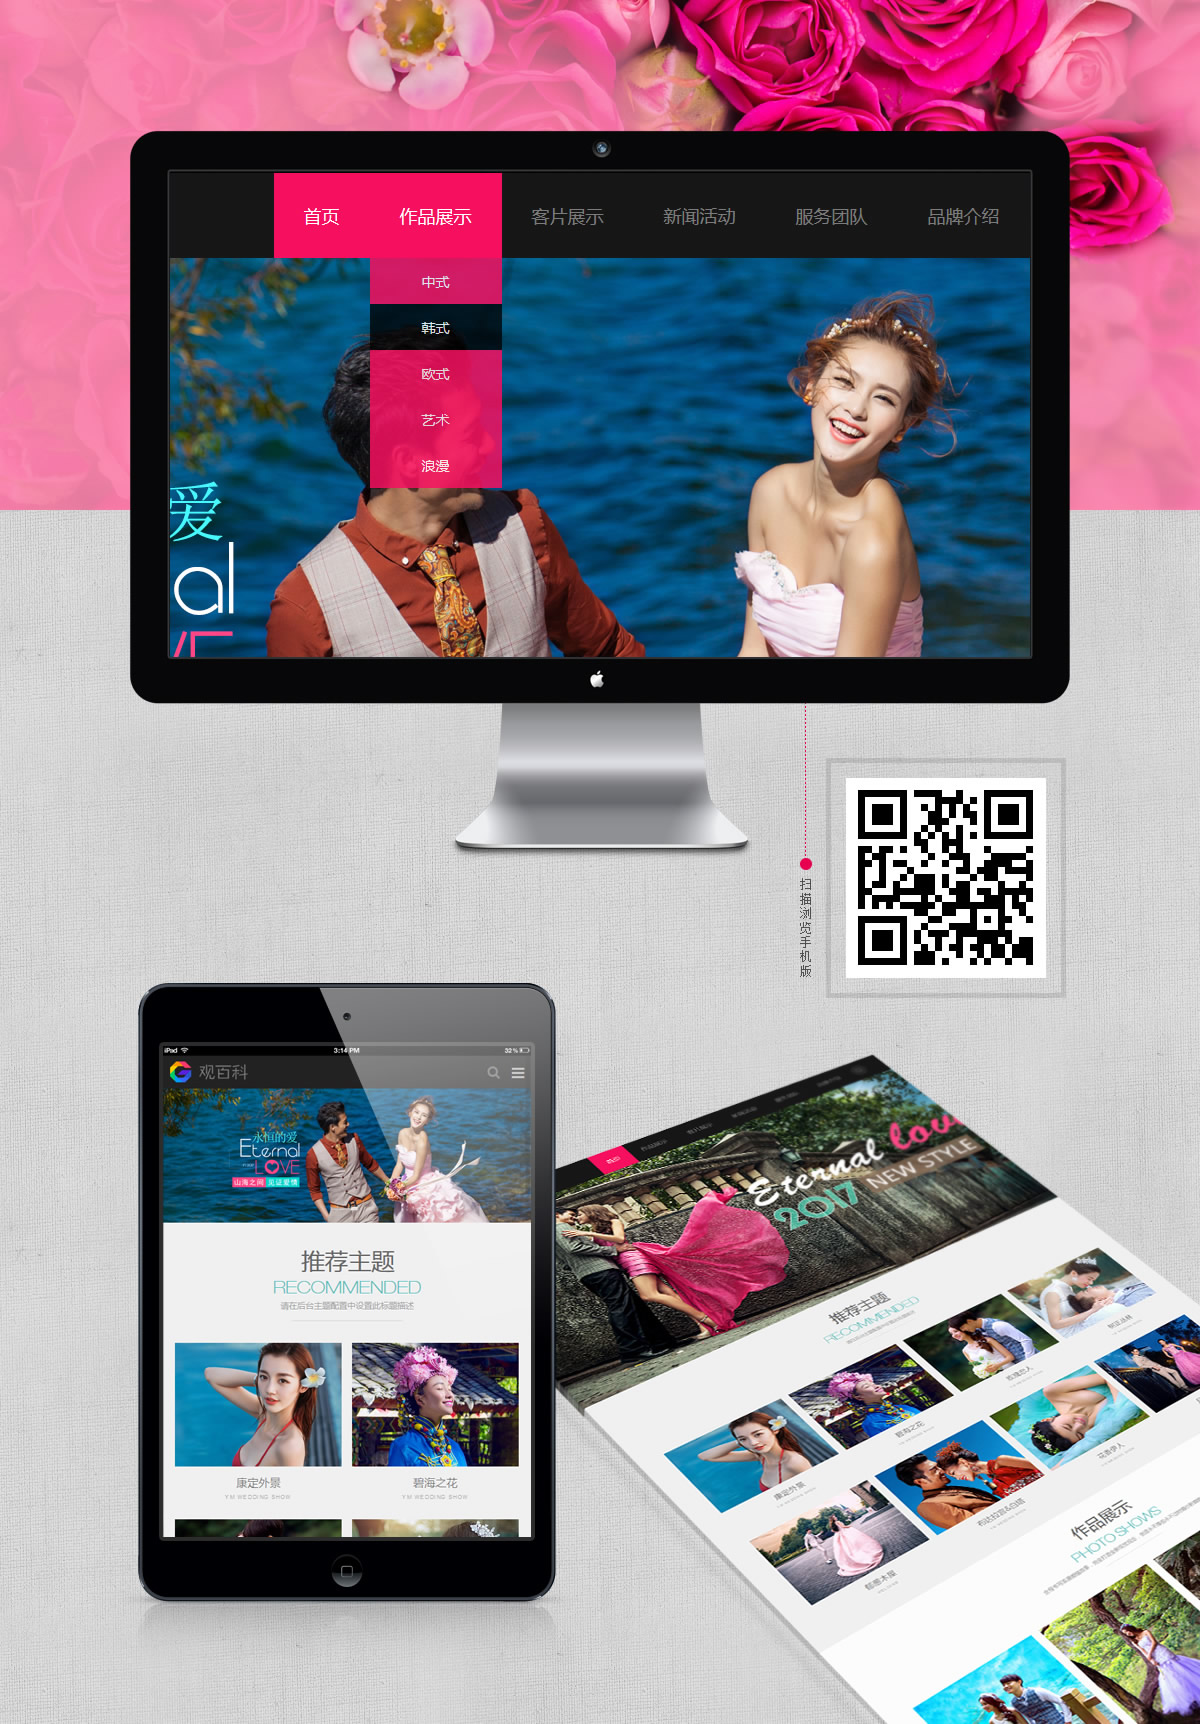 婚纱摄影网站界面设计 摄影 婚庆 Web设计 界面设计 UI设计 图1